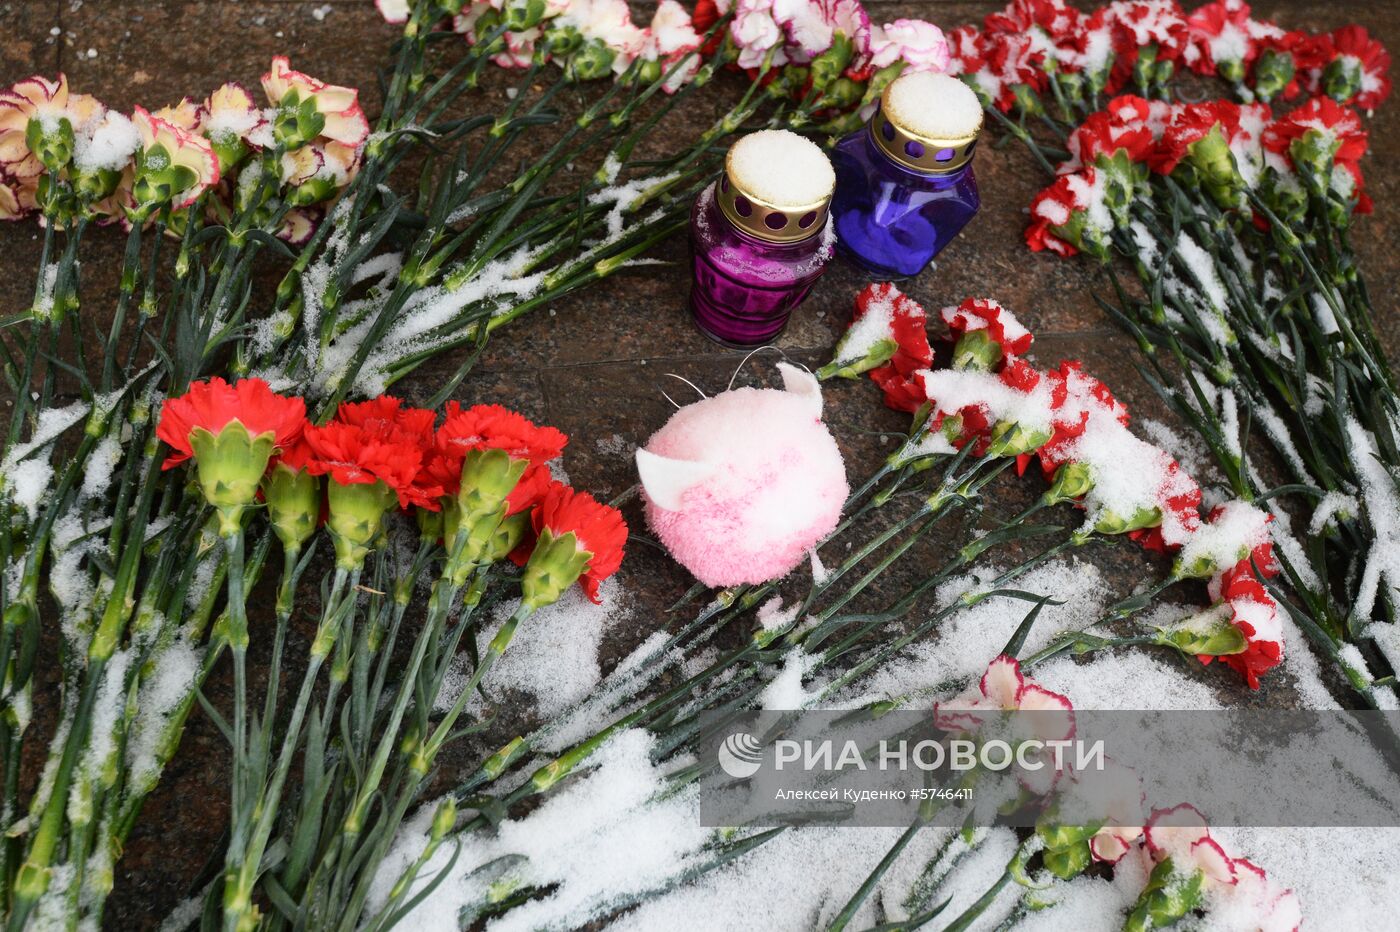 Москвичи несут цветы и игрушки в память о погибших в Магнитогорске